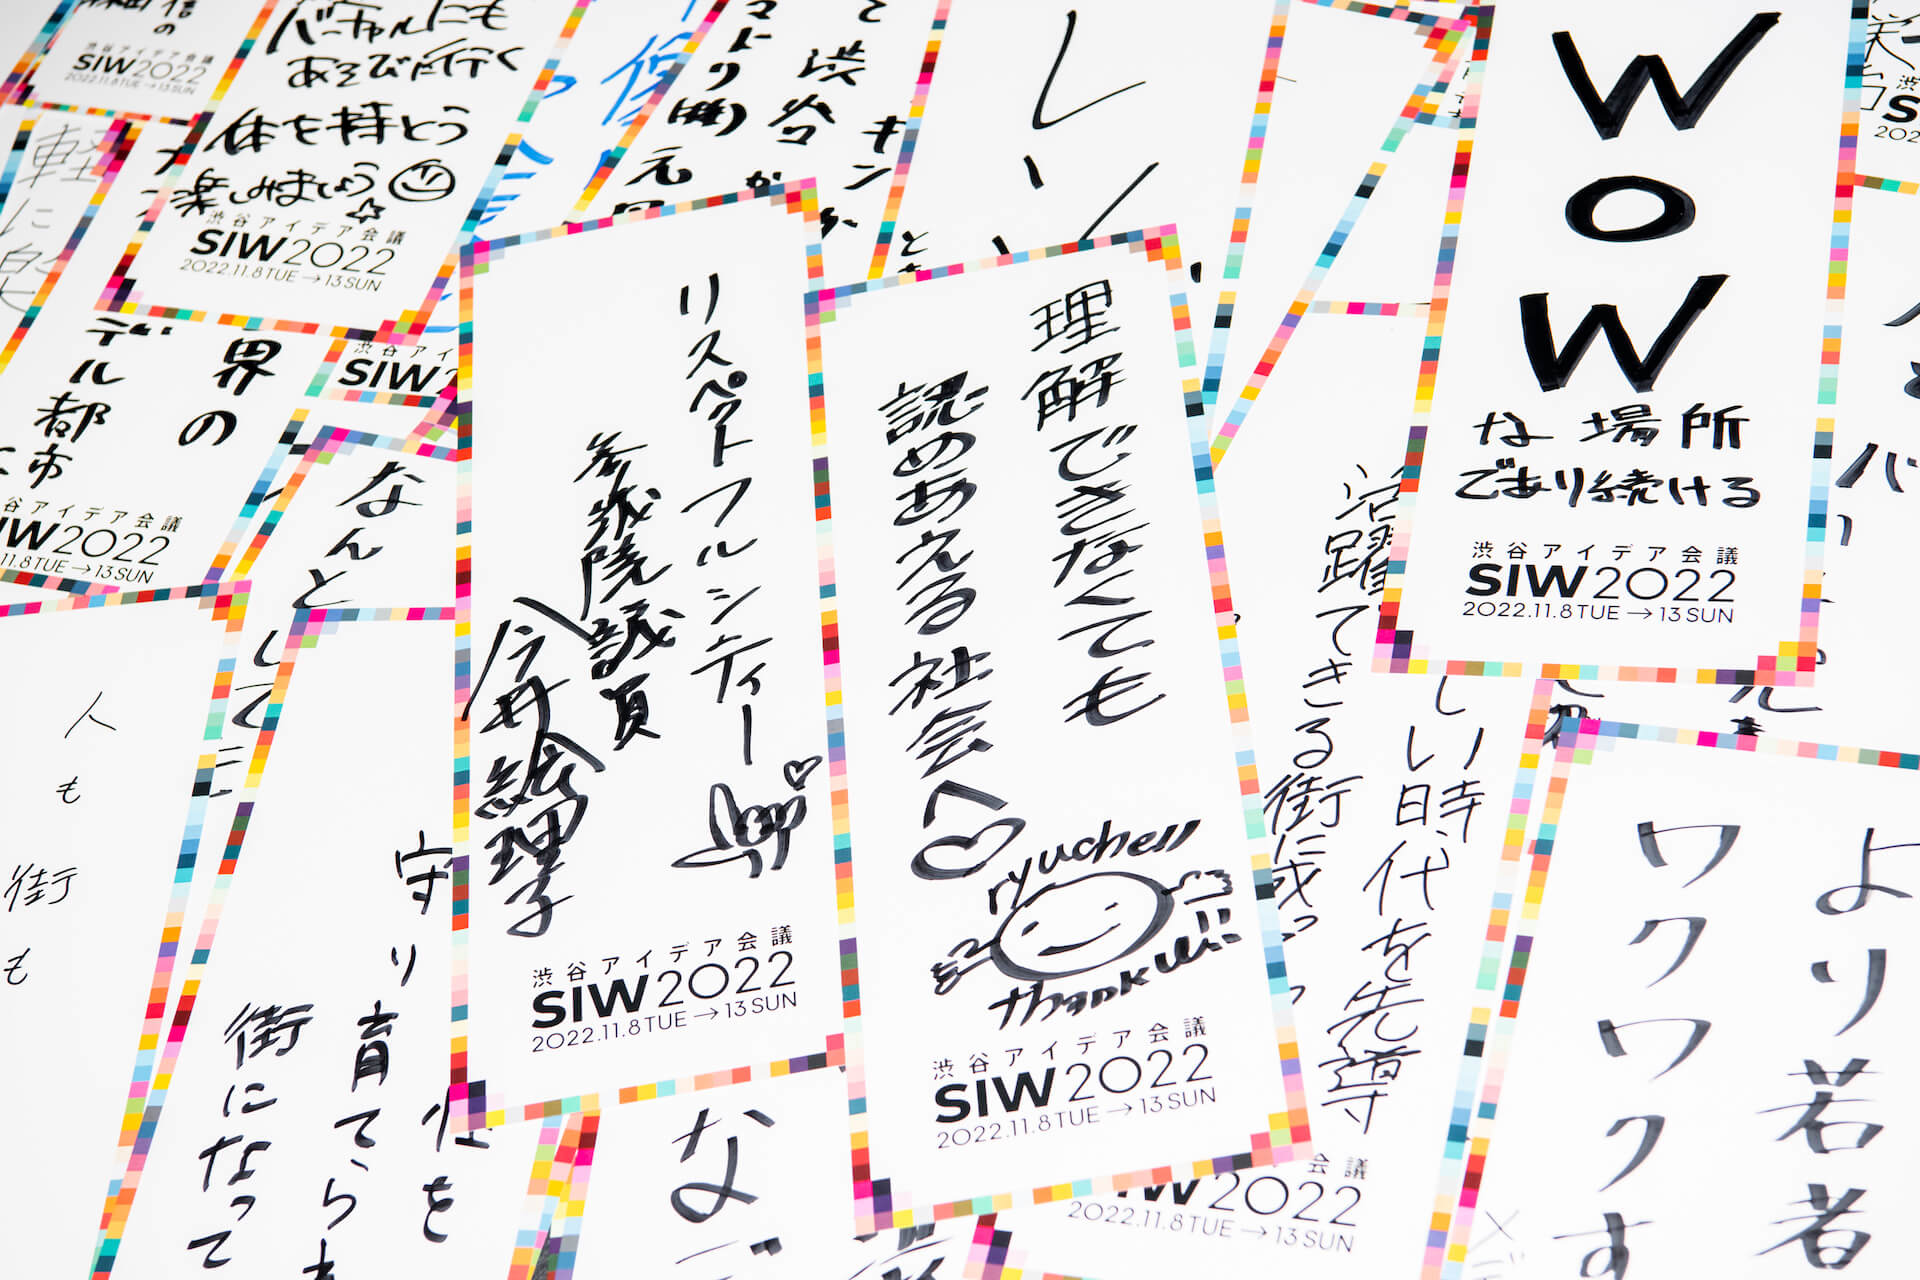 成田 悠輔、ryuchellなど265名が登壇した80プログラムのアーカイブを無料公開中！渋谷アイデア会議「SIW2022」が延べ13万人が参加で閉幕 culture221116-social-innovation-week-shibuya-03